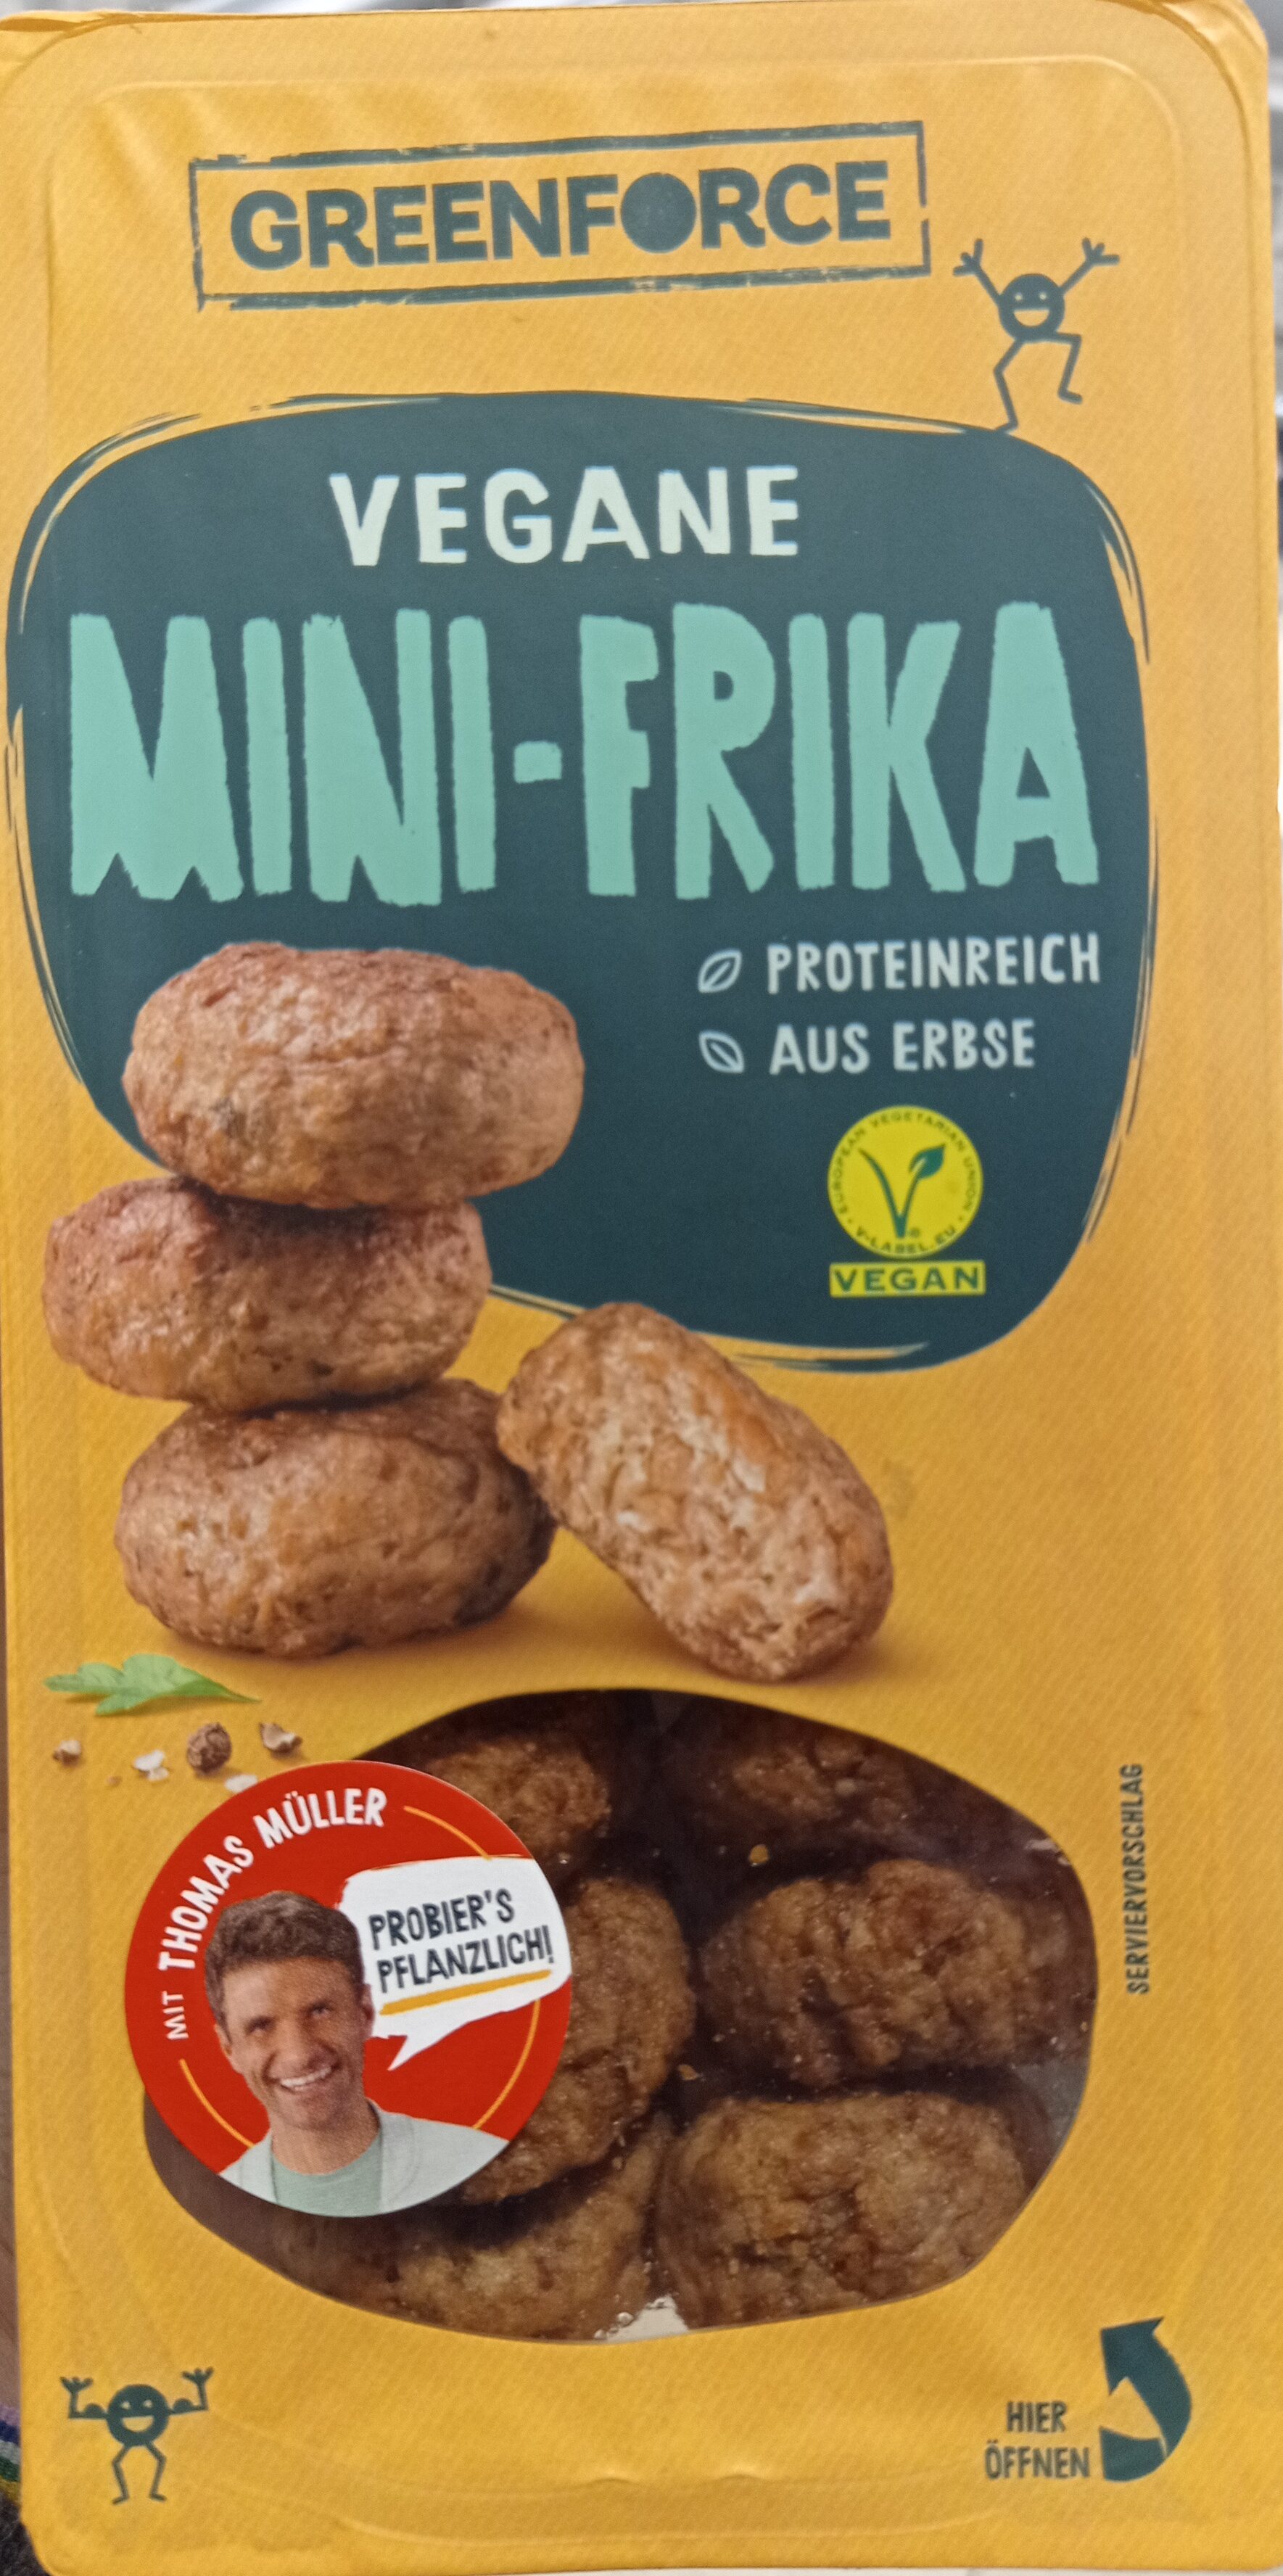 Vegane Mini-Frika - Product - de